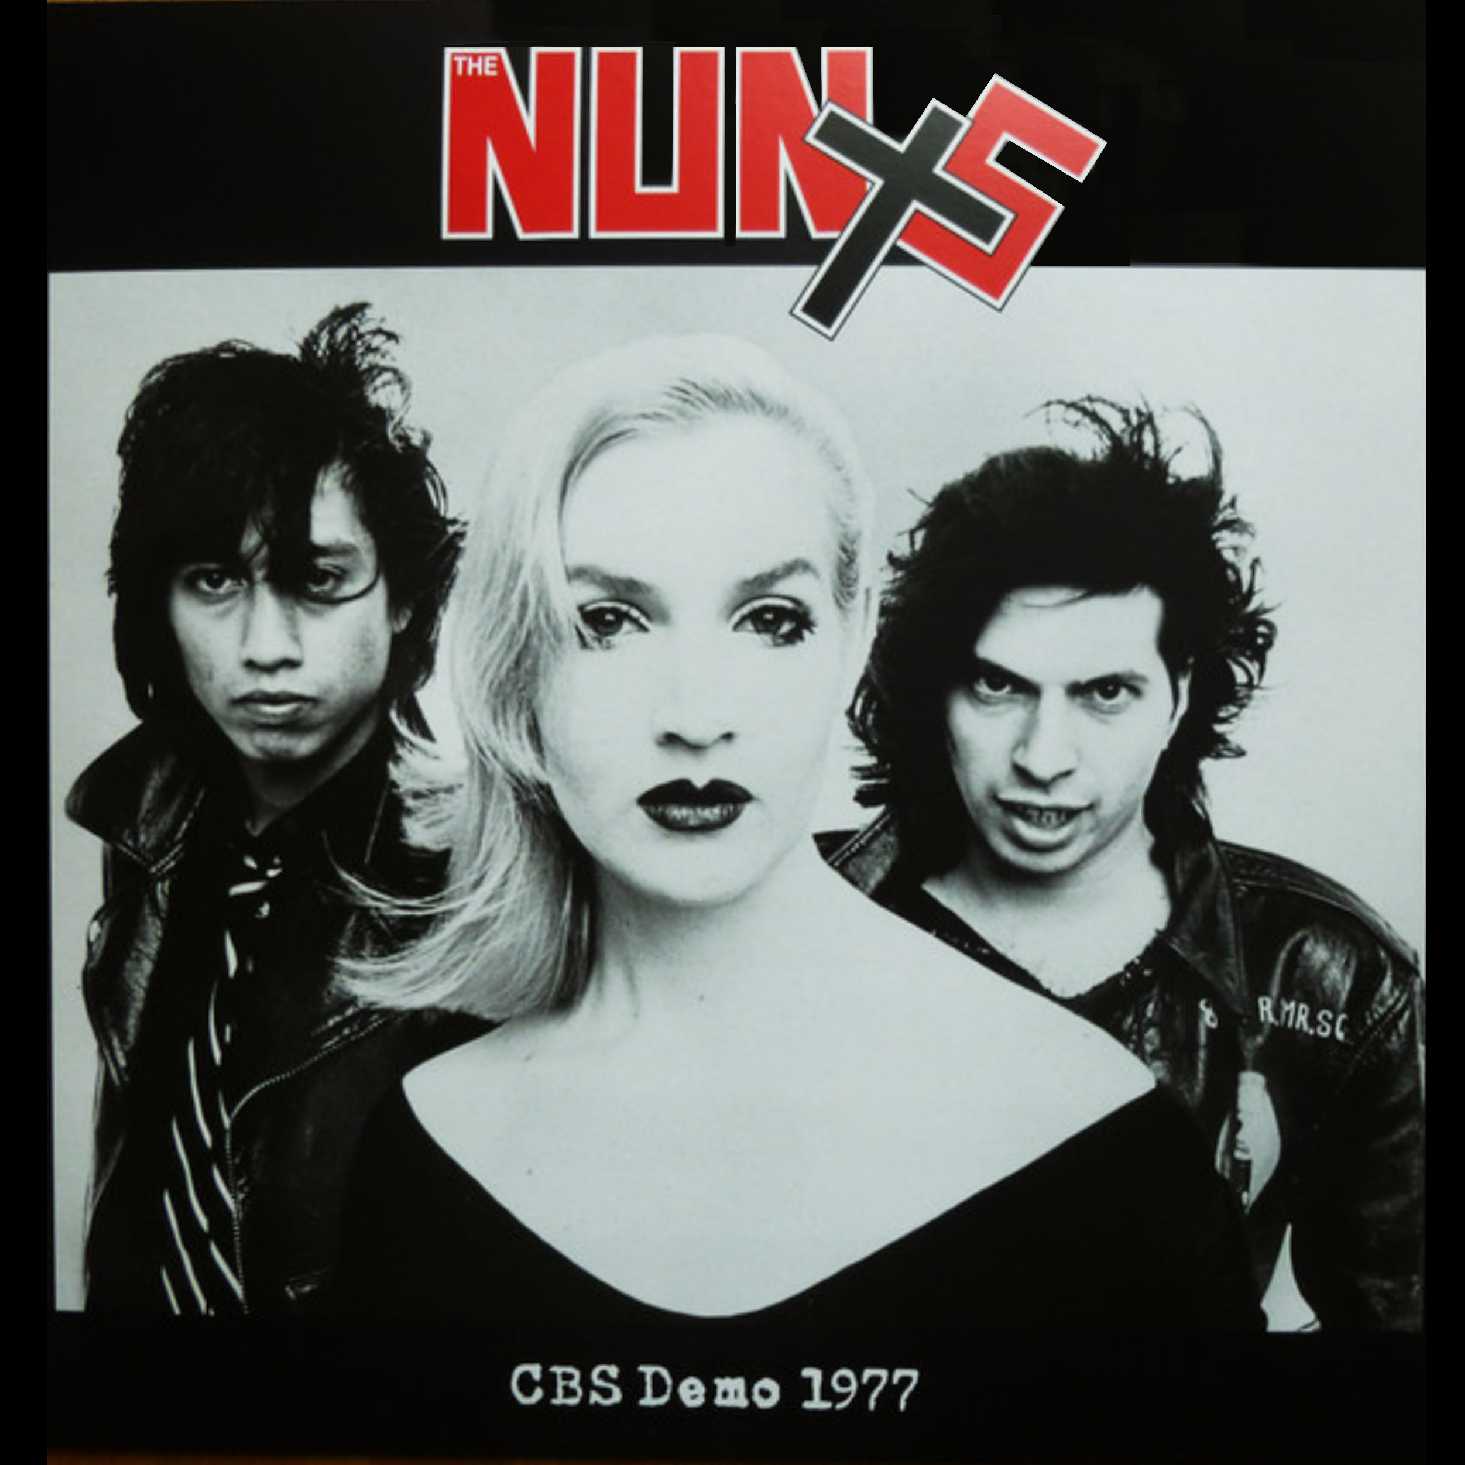 The Nuns 1977 Demos